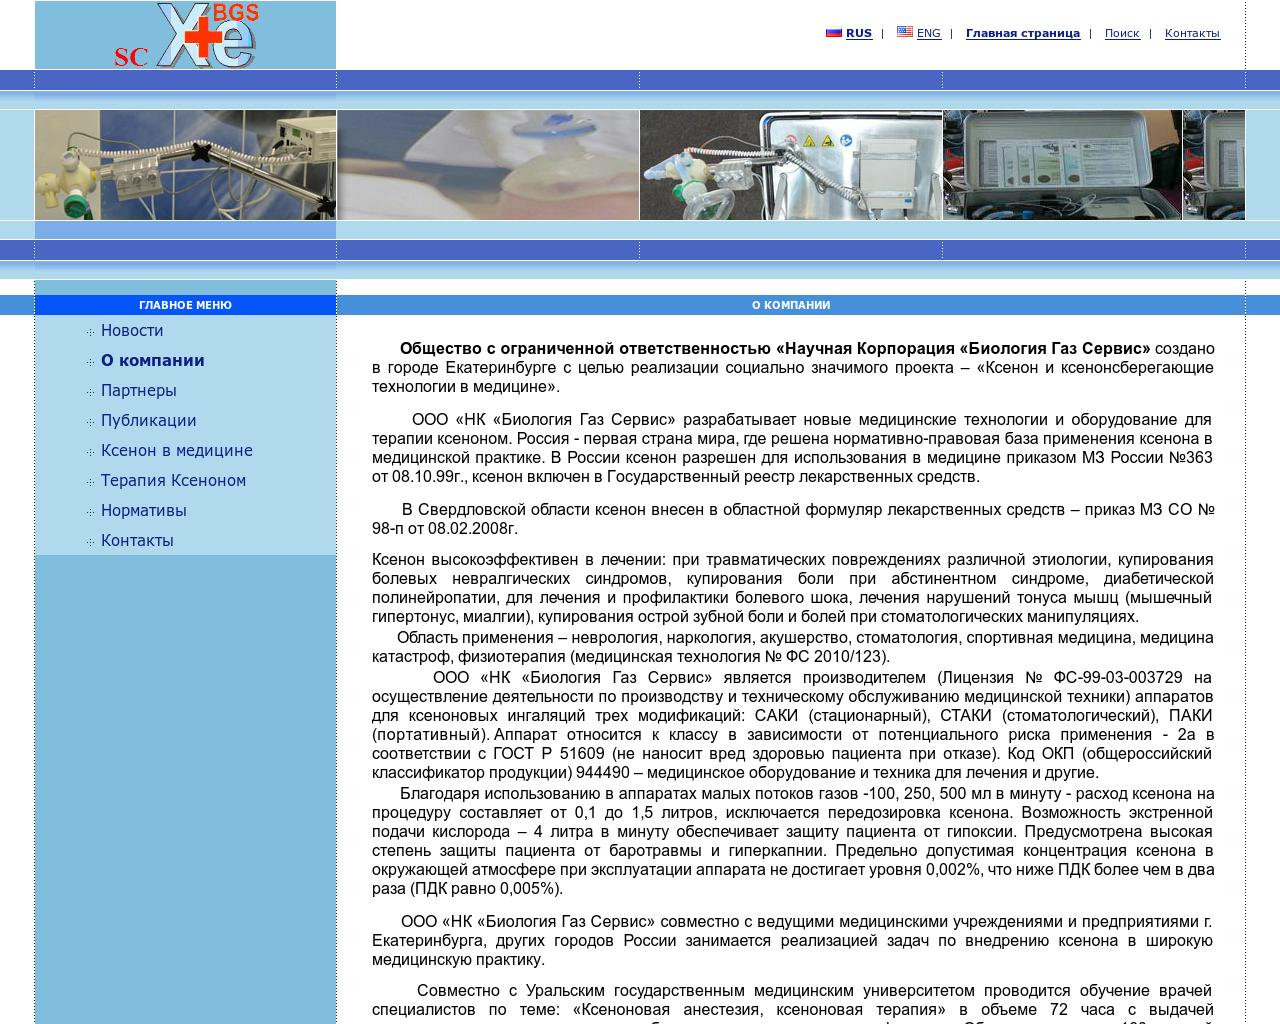 Изображение сайта xebgs.ru в разрешении 1280x1024